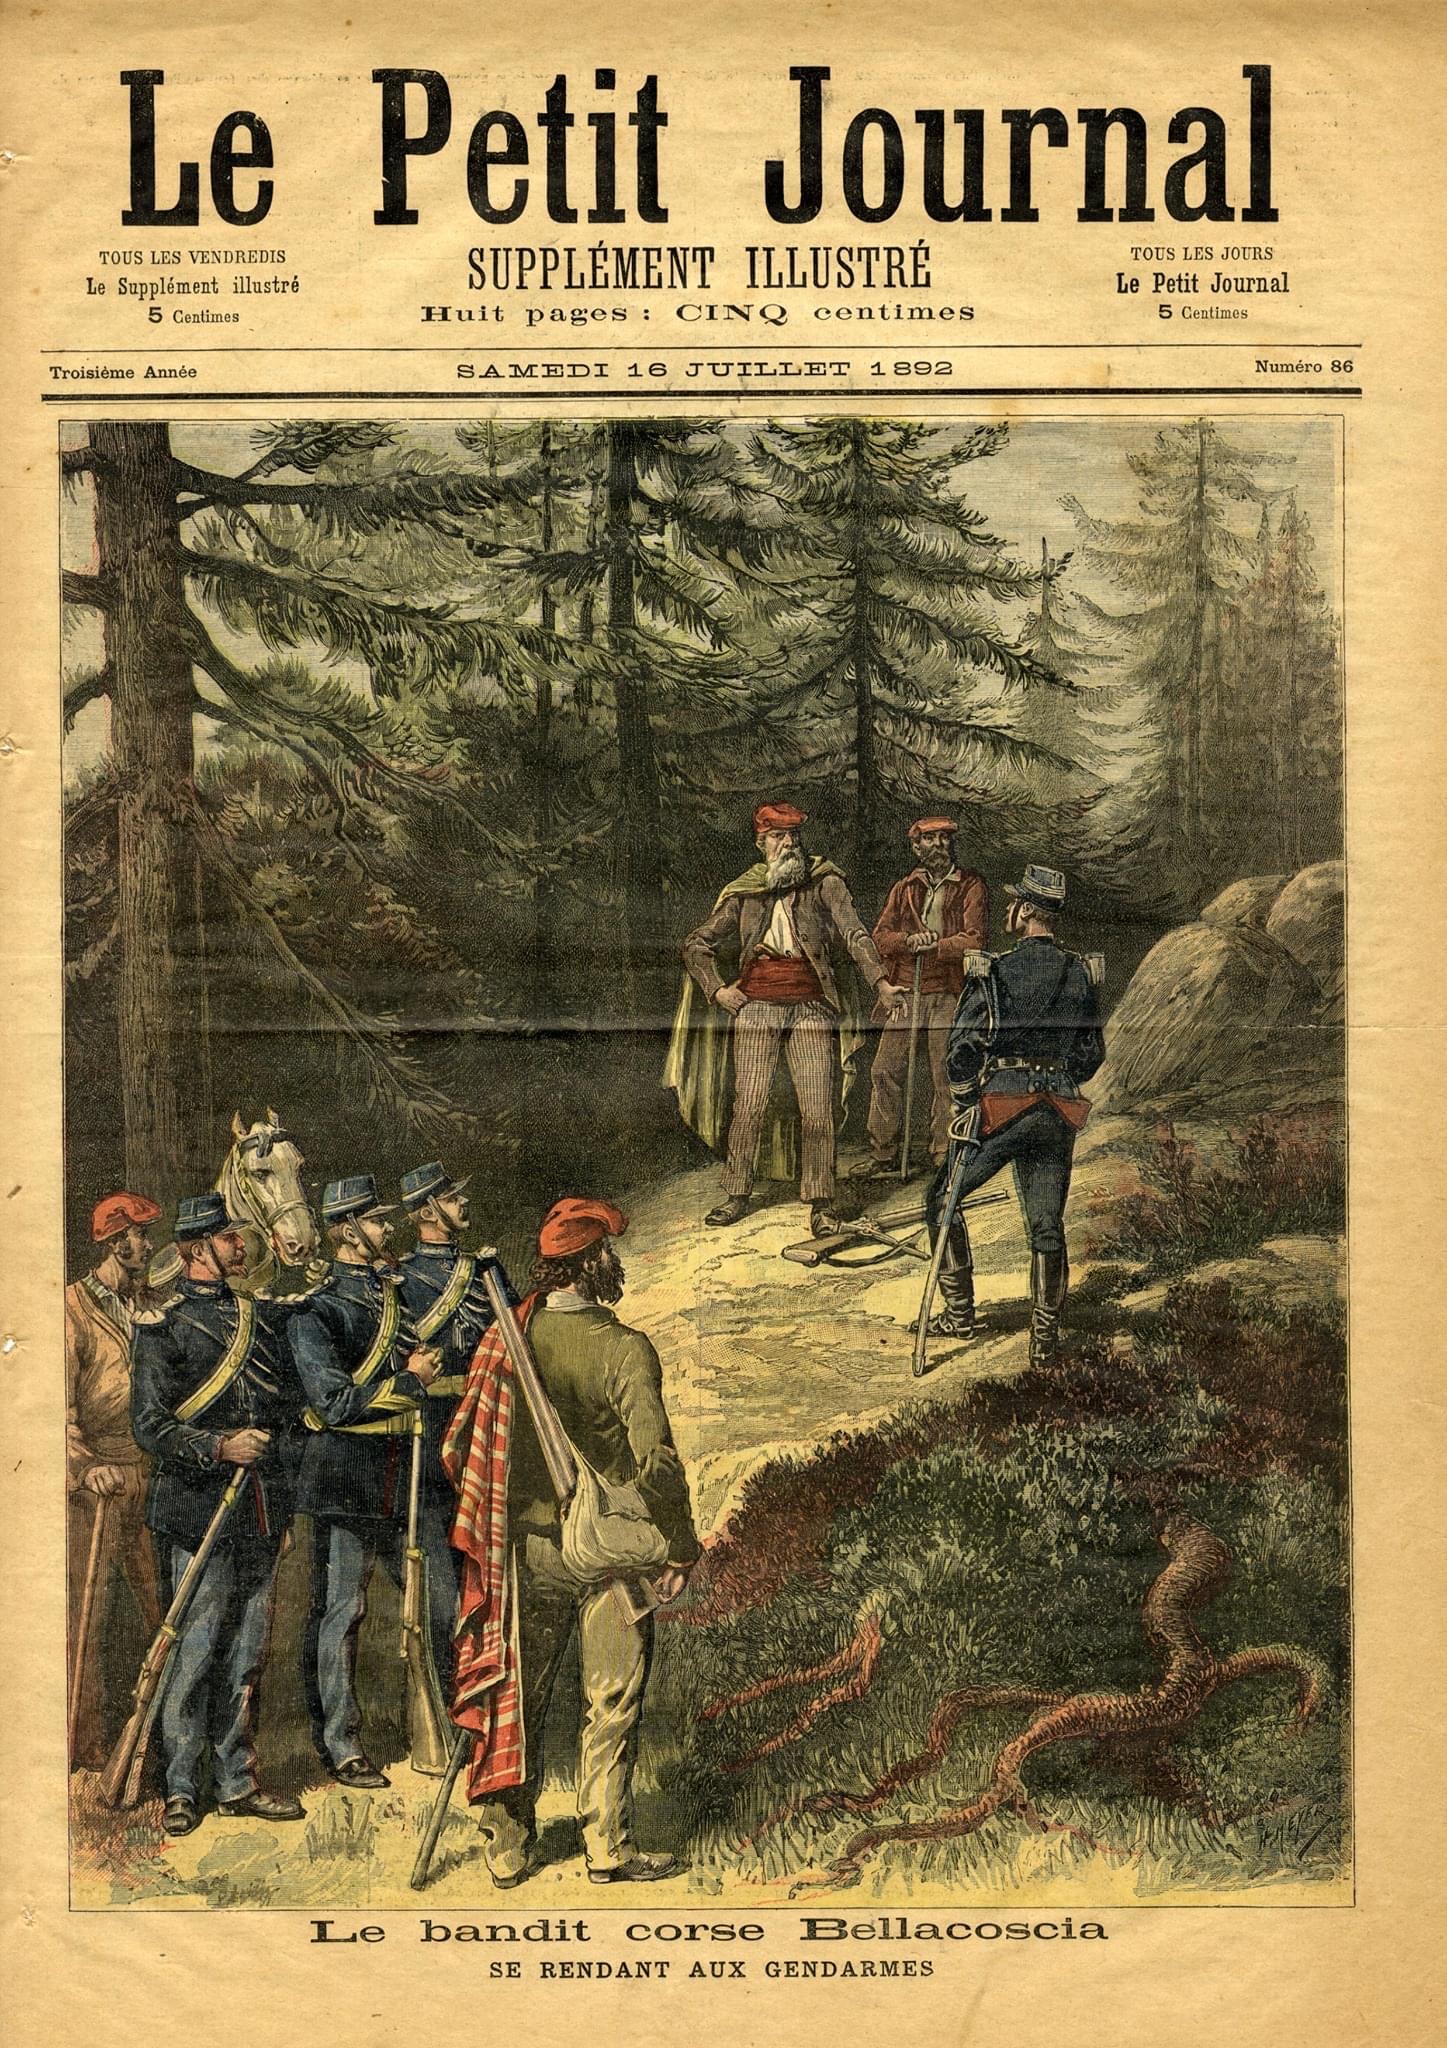 Le Petit Journal, 1892